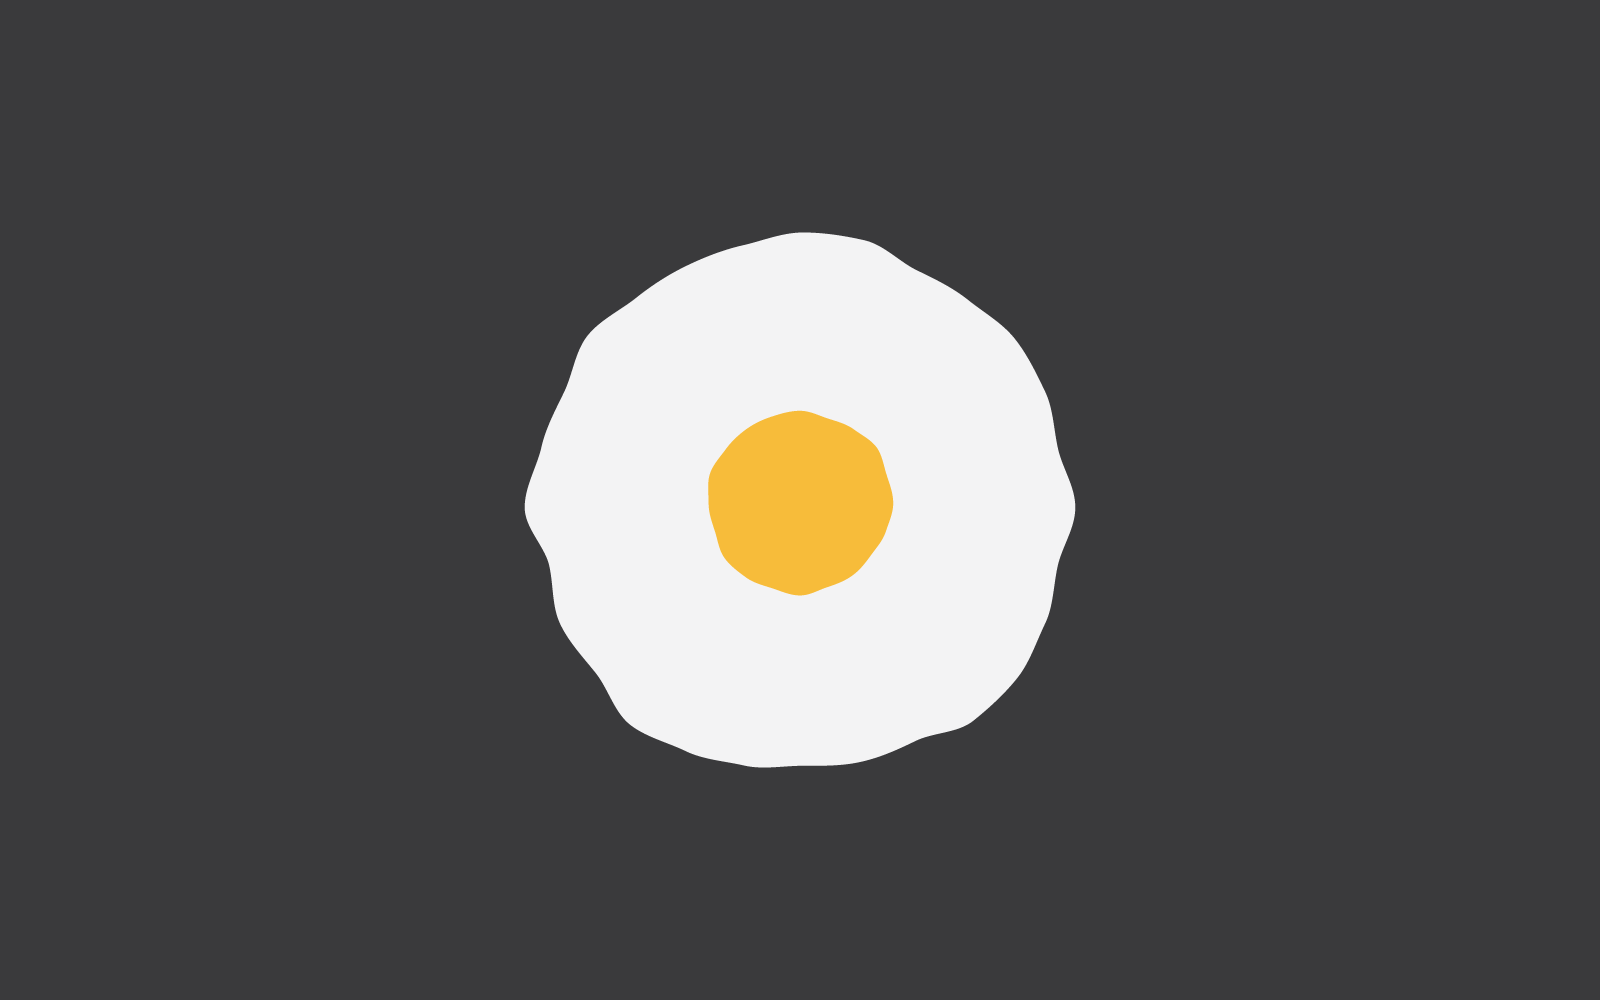 Omelet Egg illustration logo vector flat design